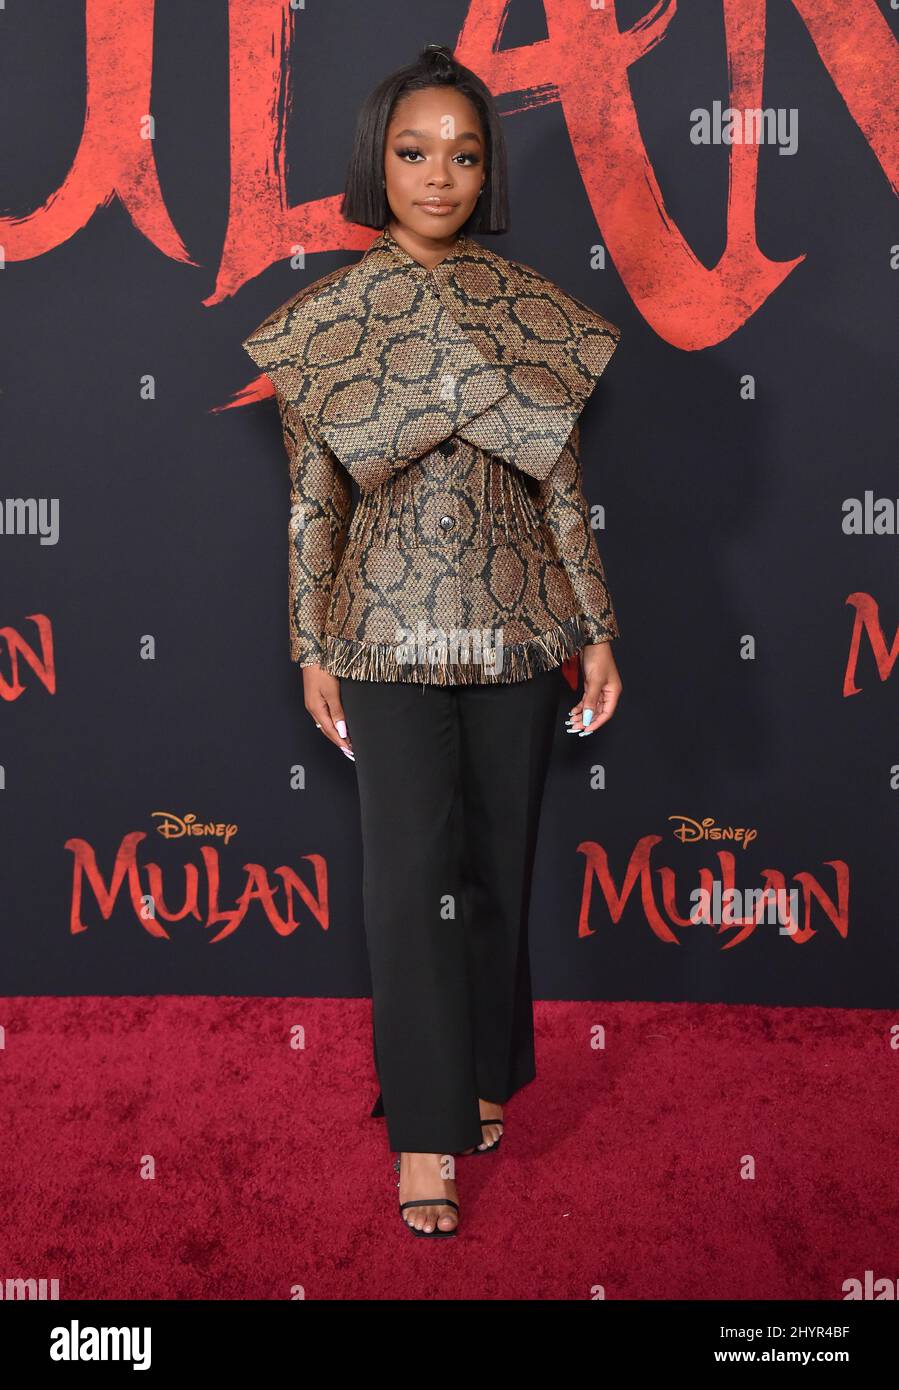 Marsai Martin partecipa al Disney's Mulan World Premiere tenuto a Hollywood, USA lunedì 9 marzo 2020. Foto Stock